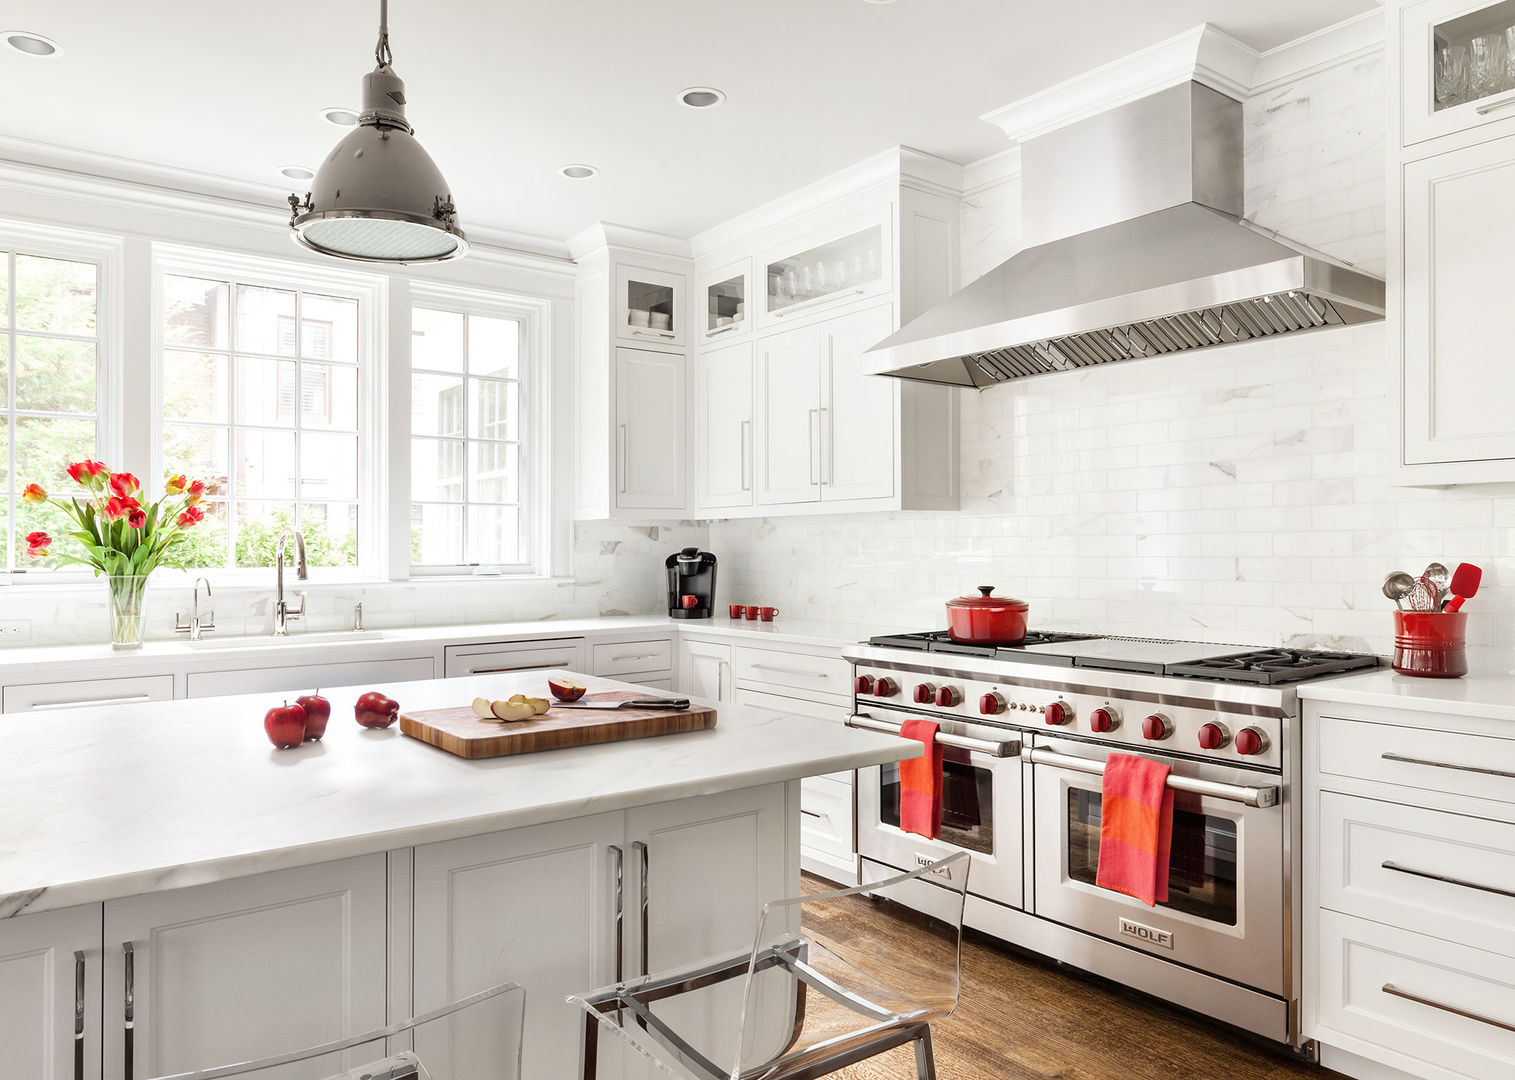 Kitchens, Clean Design Clean Design Кухня в стиле модерн